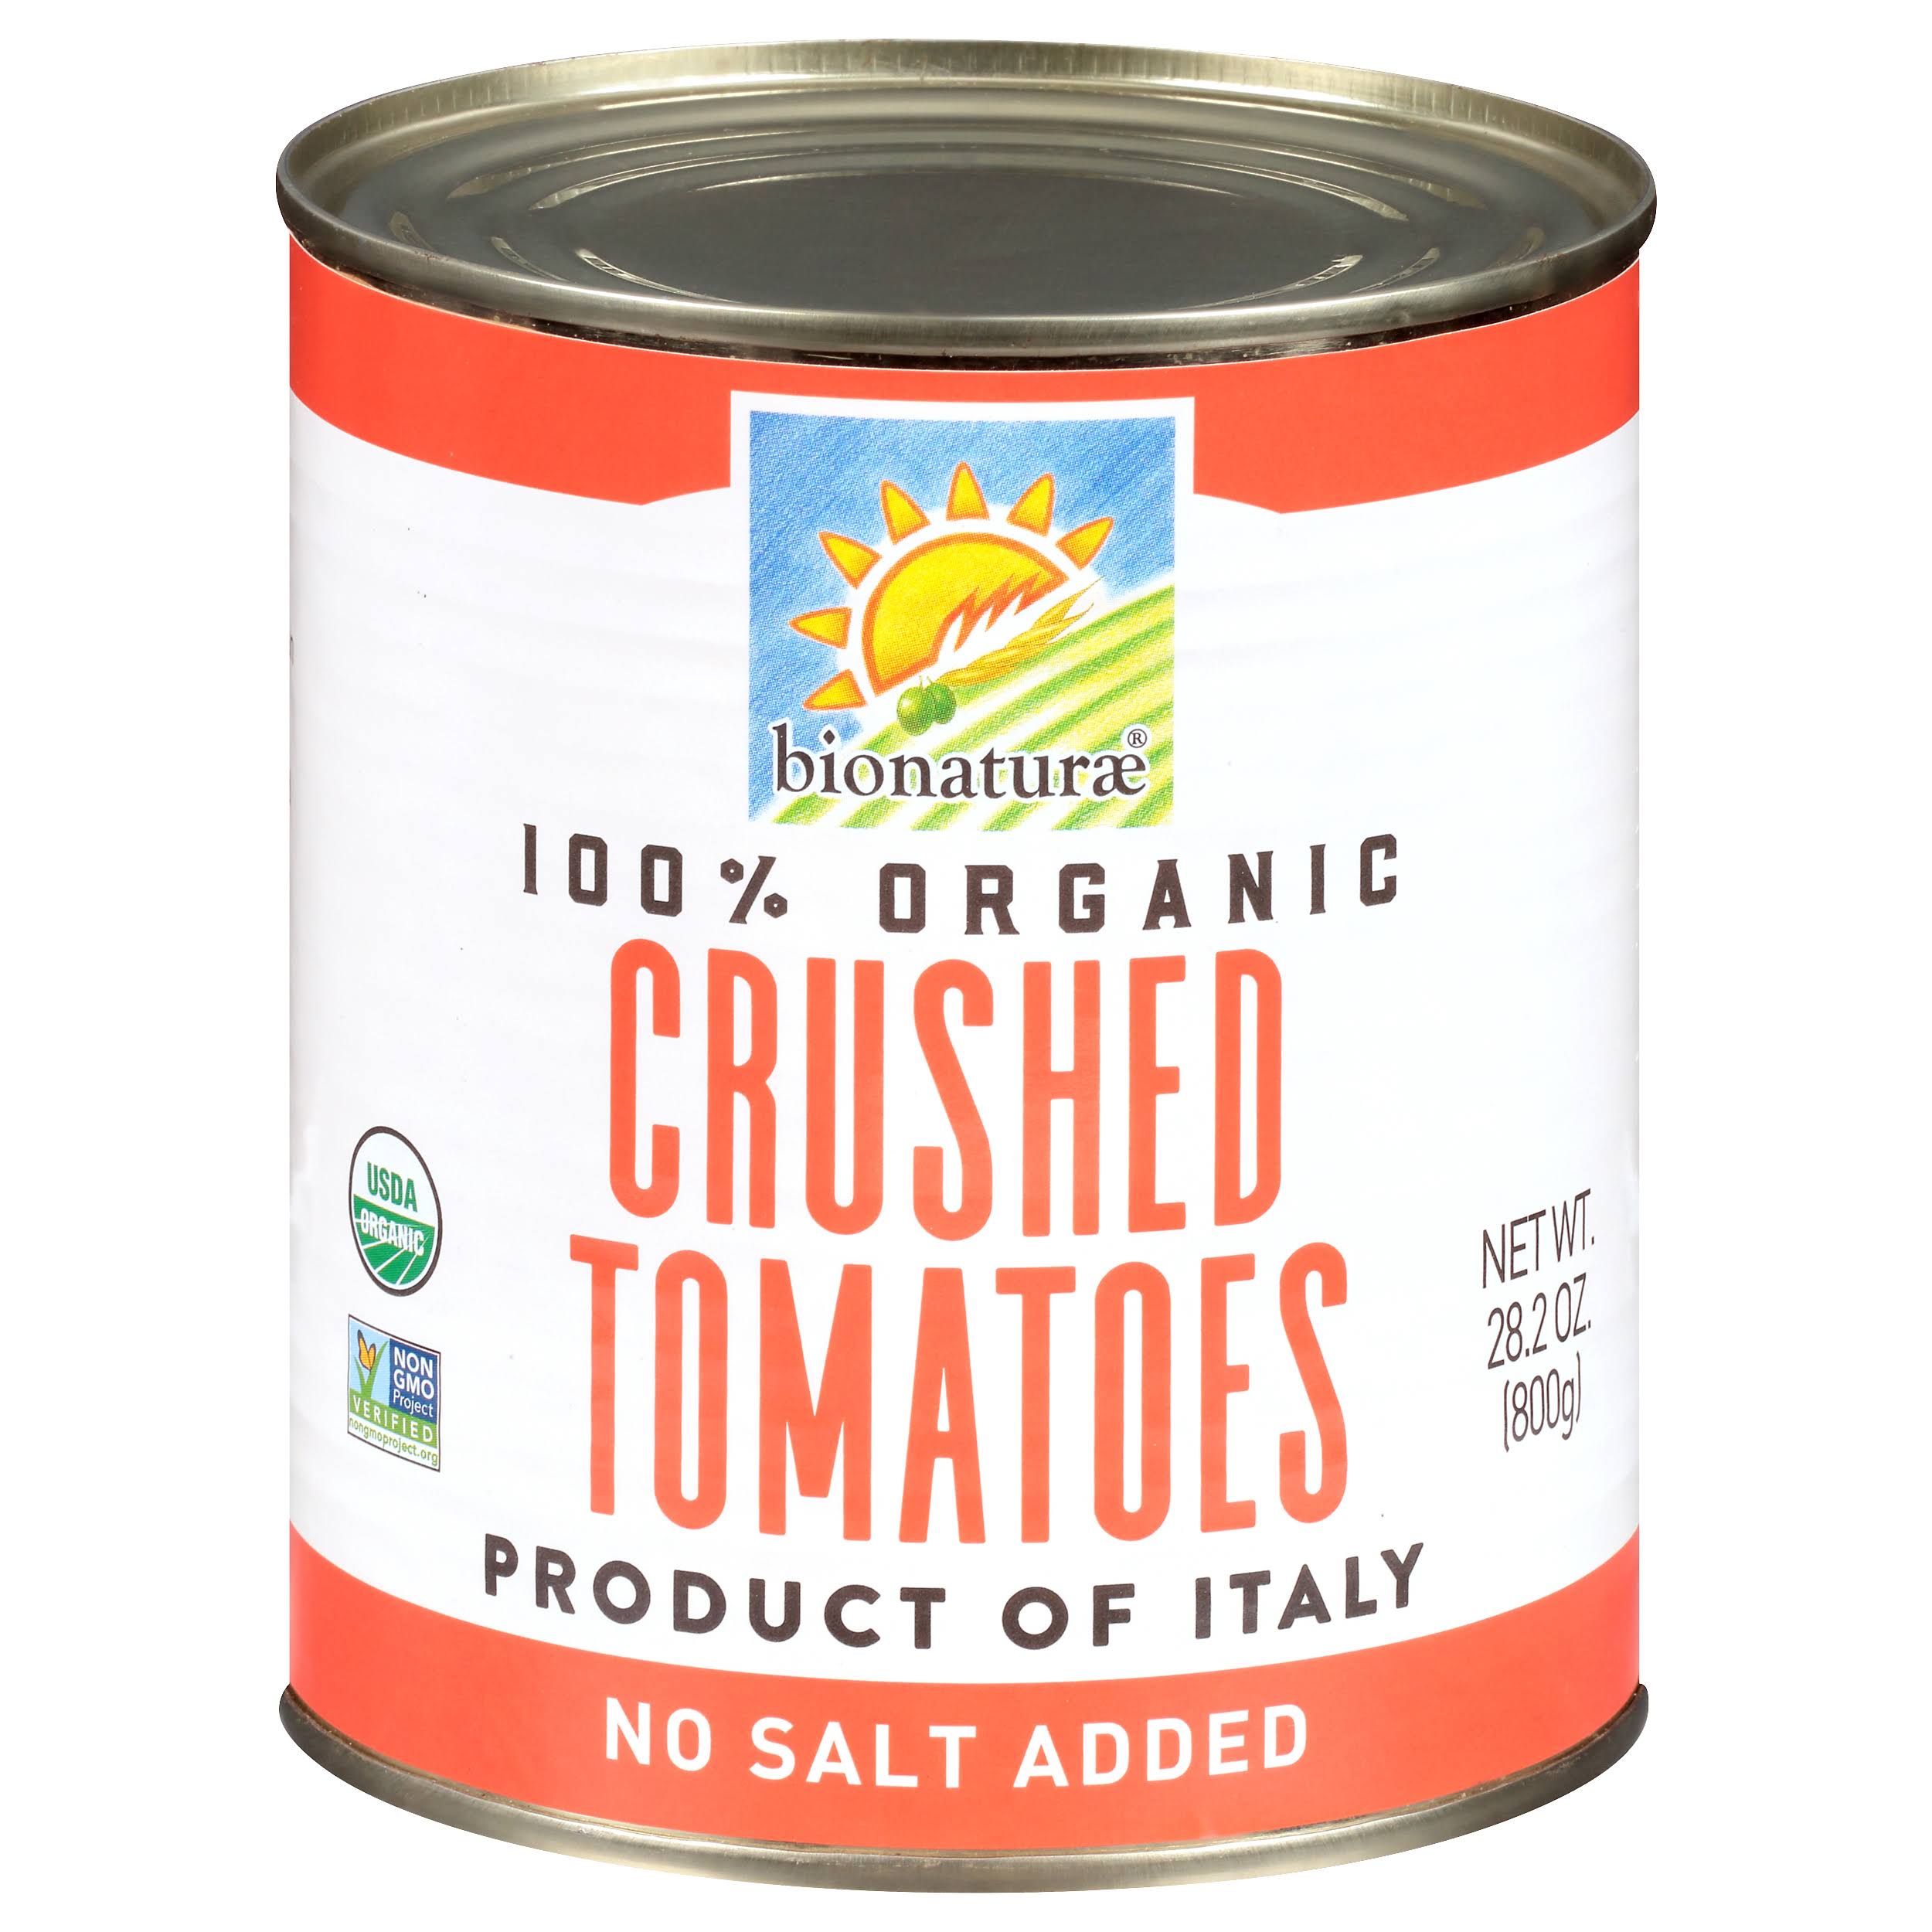 Bionaturae Organic Crushed Tomatoes - 800g